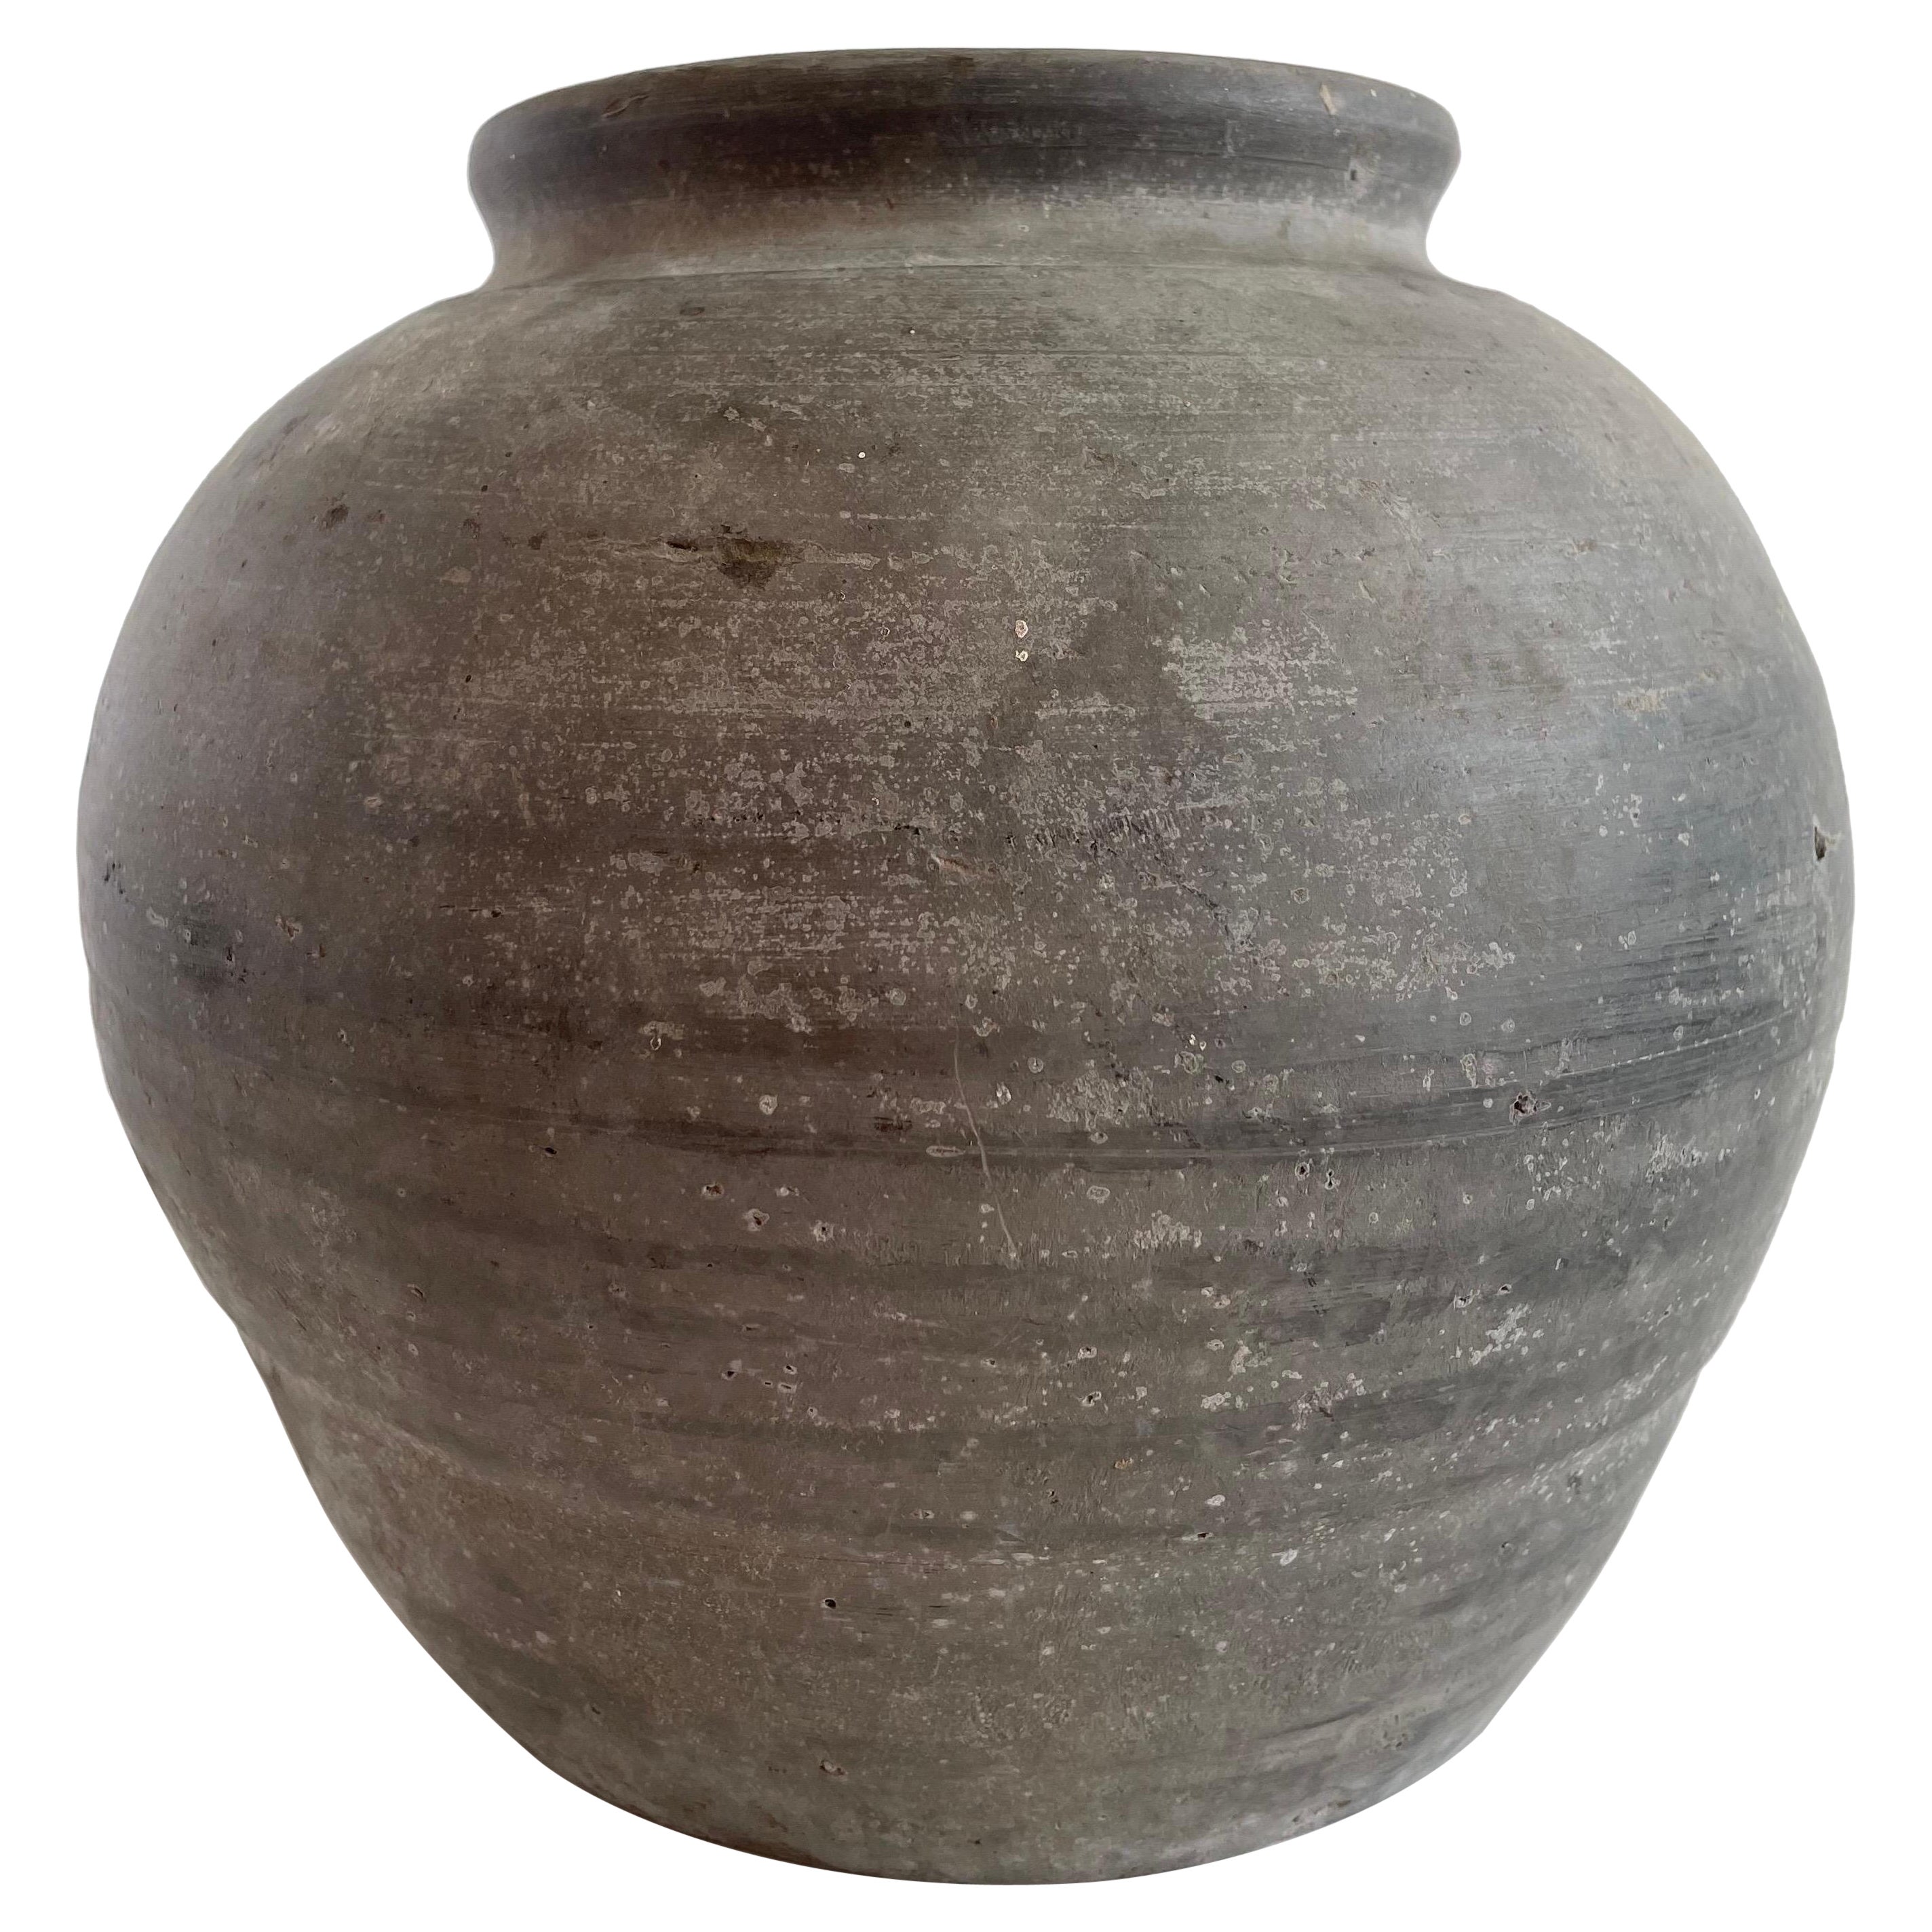 Vintage Clay Pot Medium Size